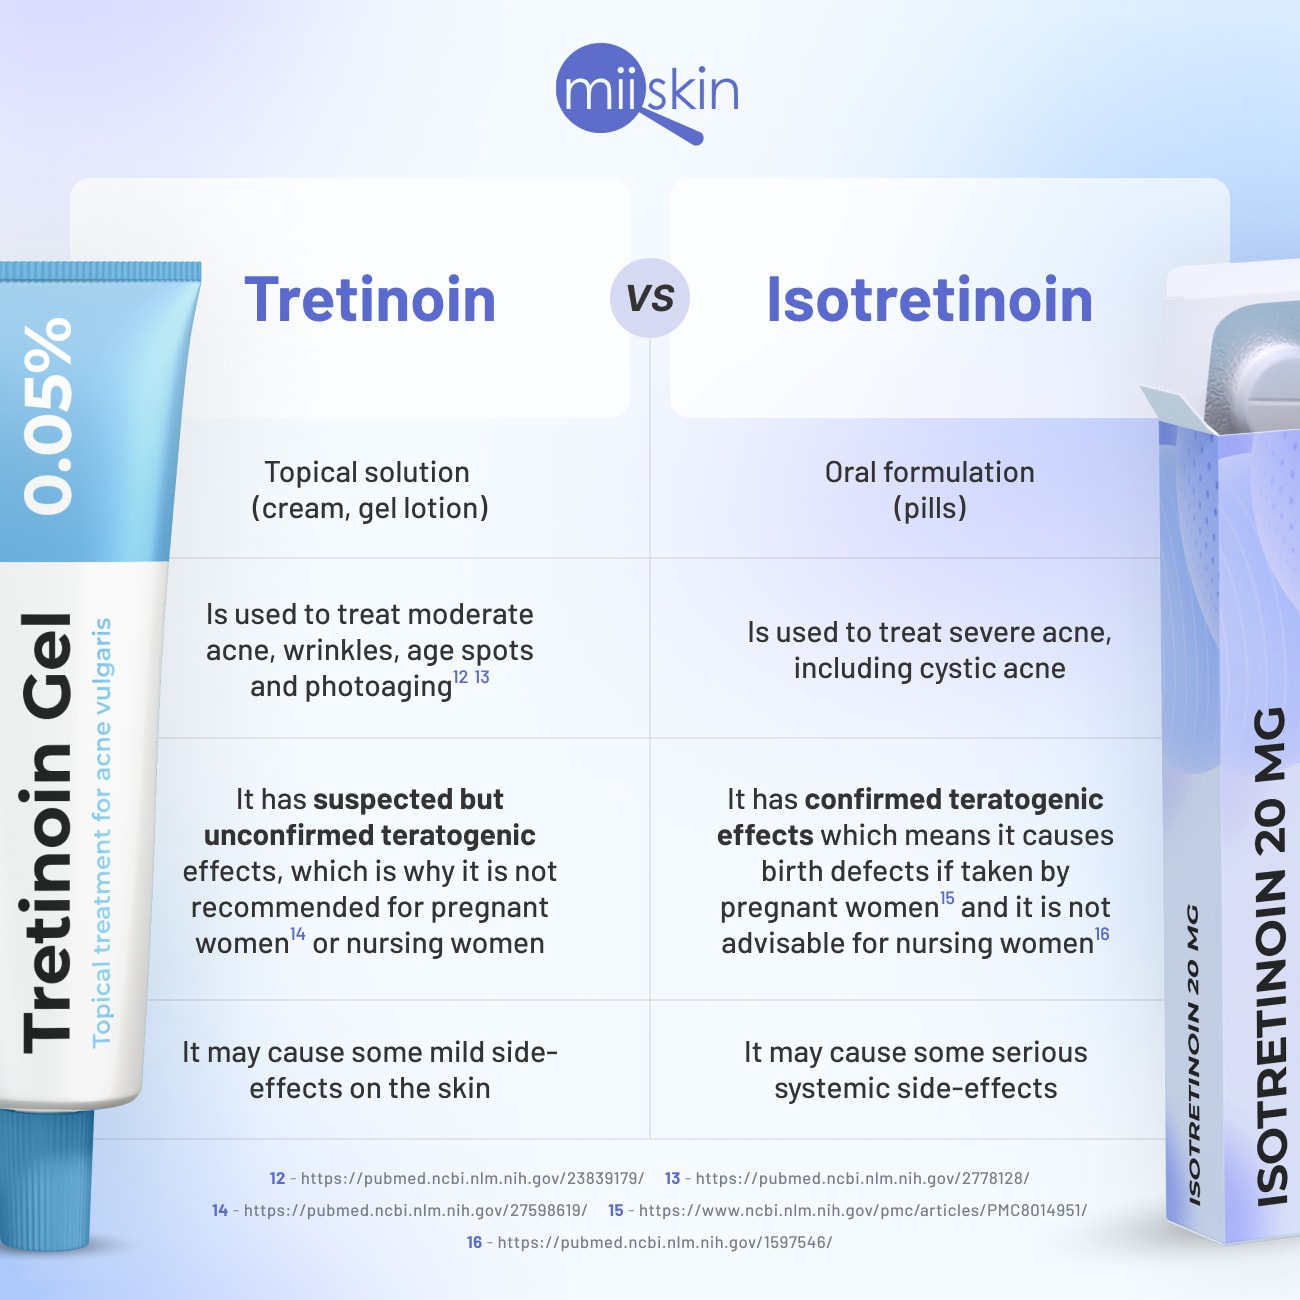 tretinoin vs isotretinoin